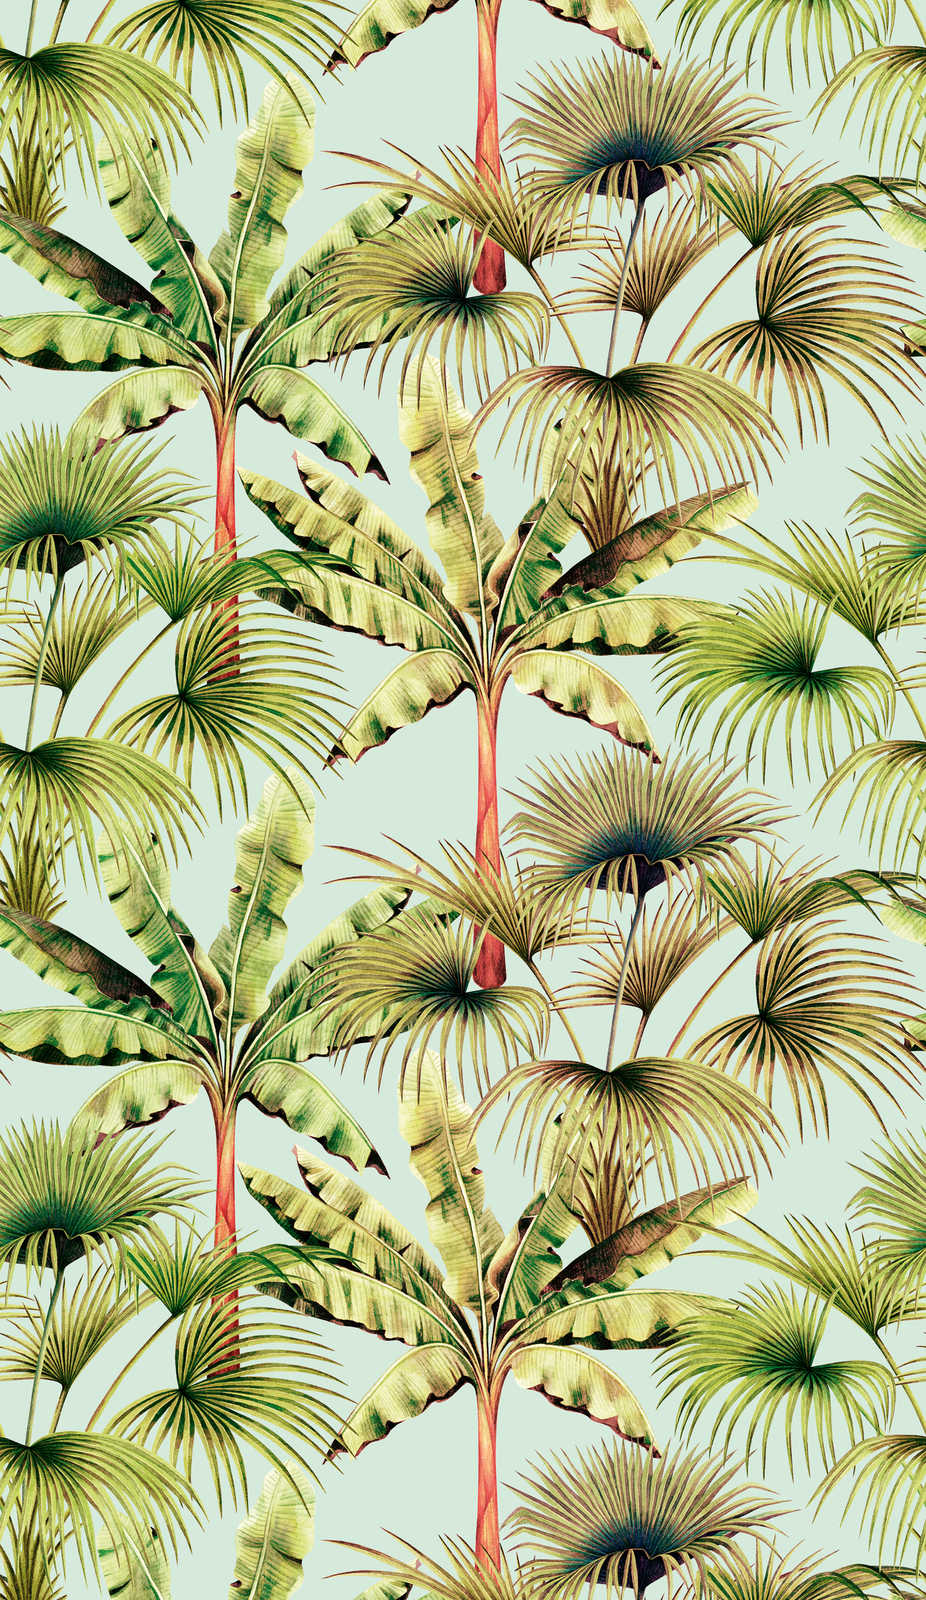             Papel pintado tejido-no tejido colorido con motivo de hojas - azul claro, verde, rojo
        